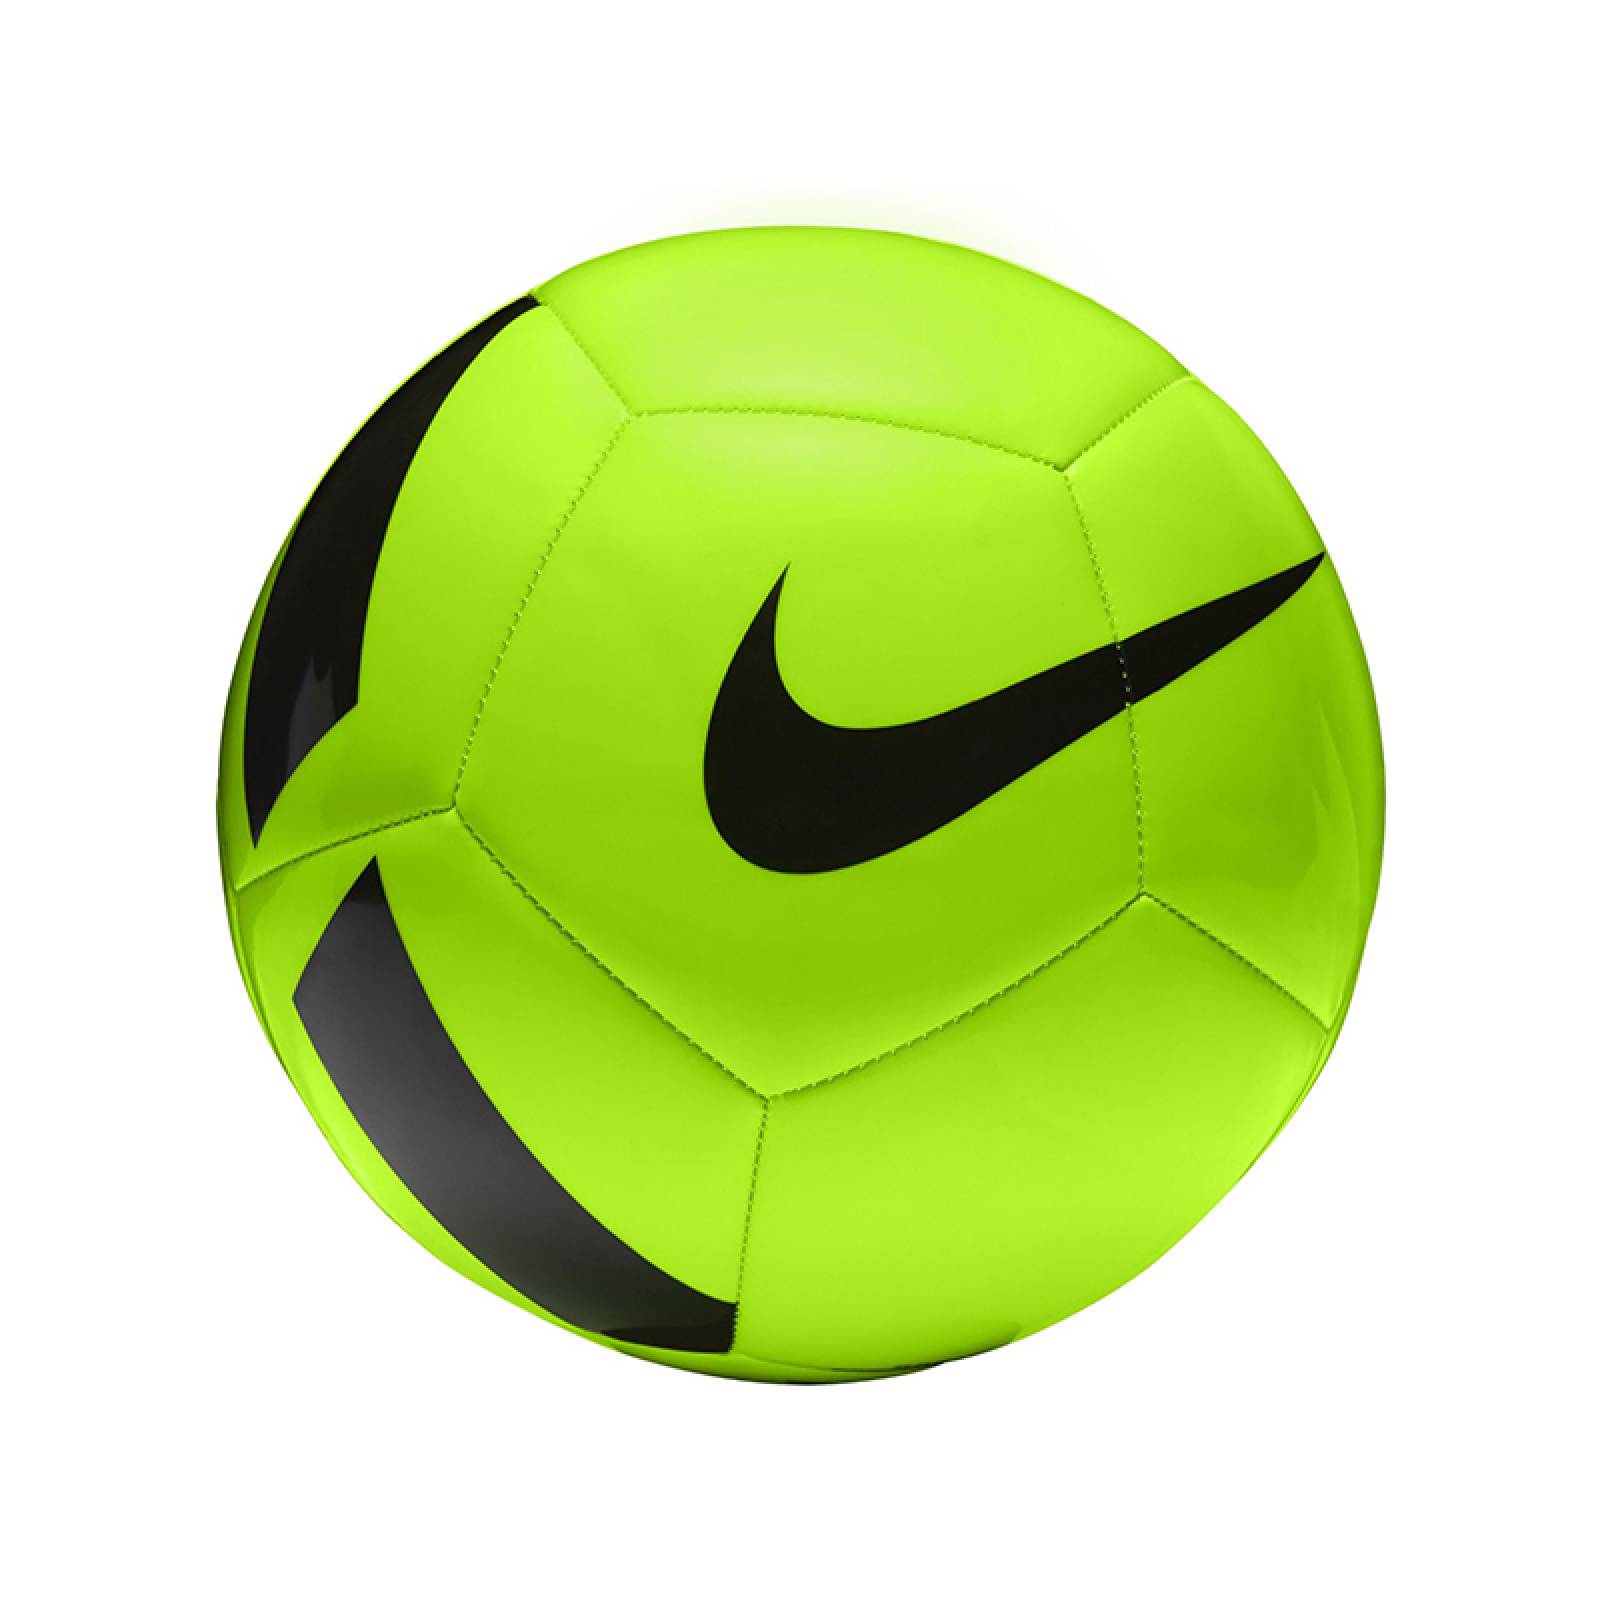 Balon Pitch Team - Nike 5